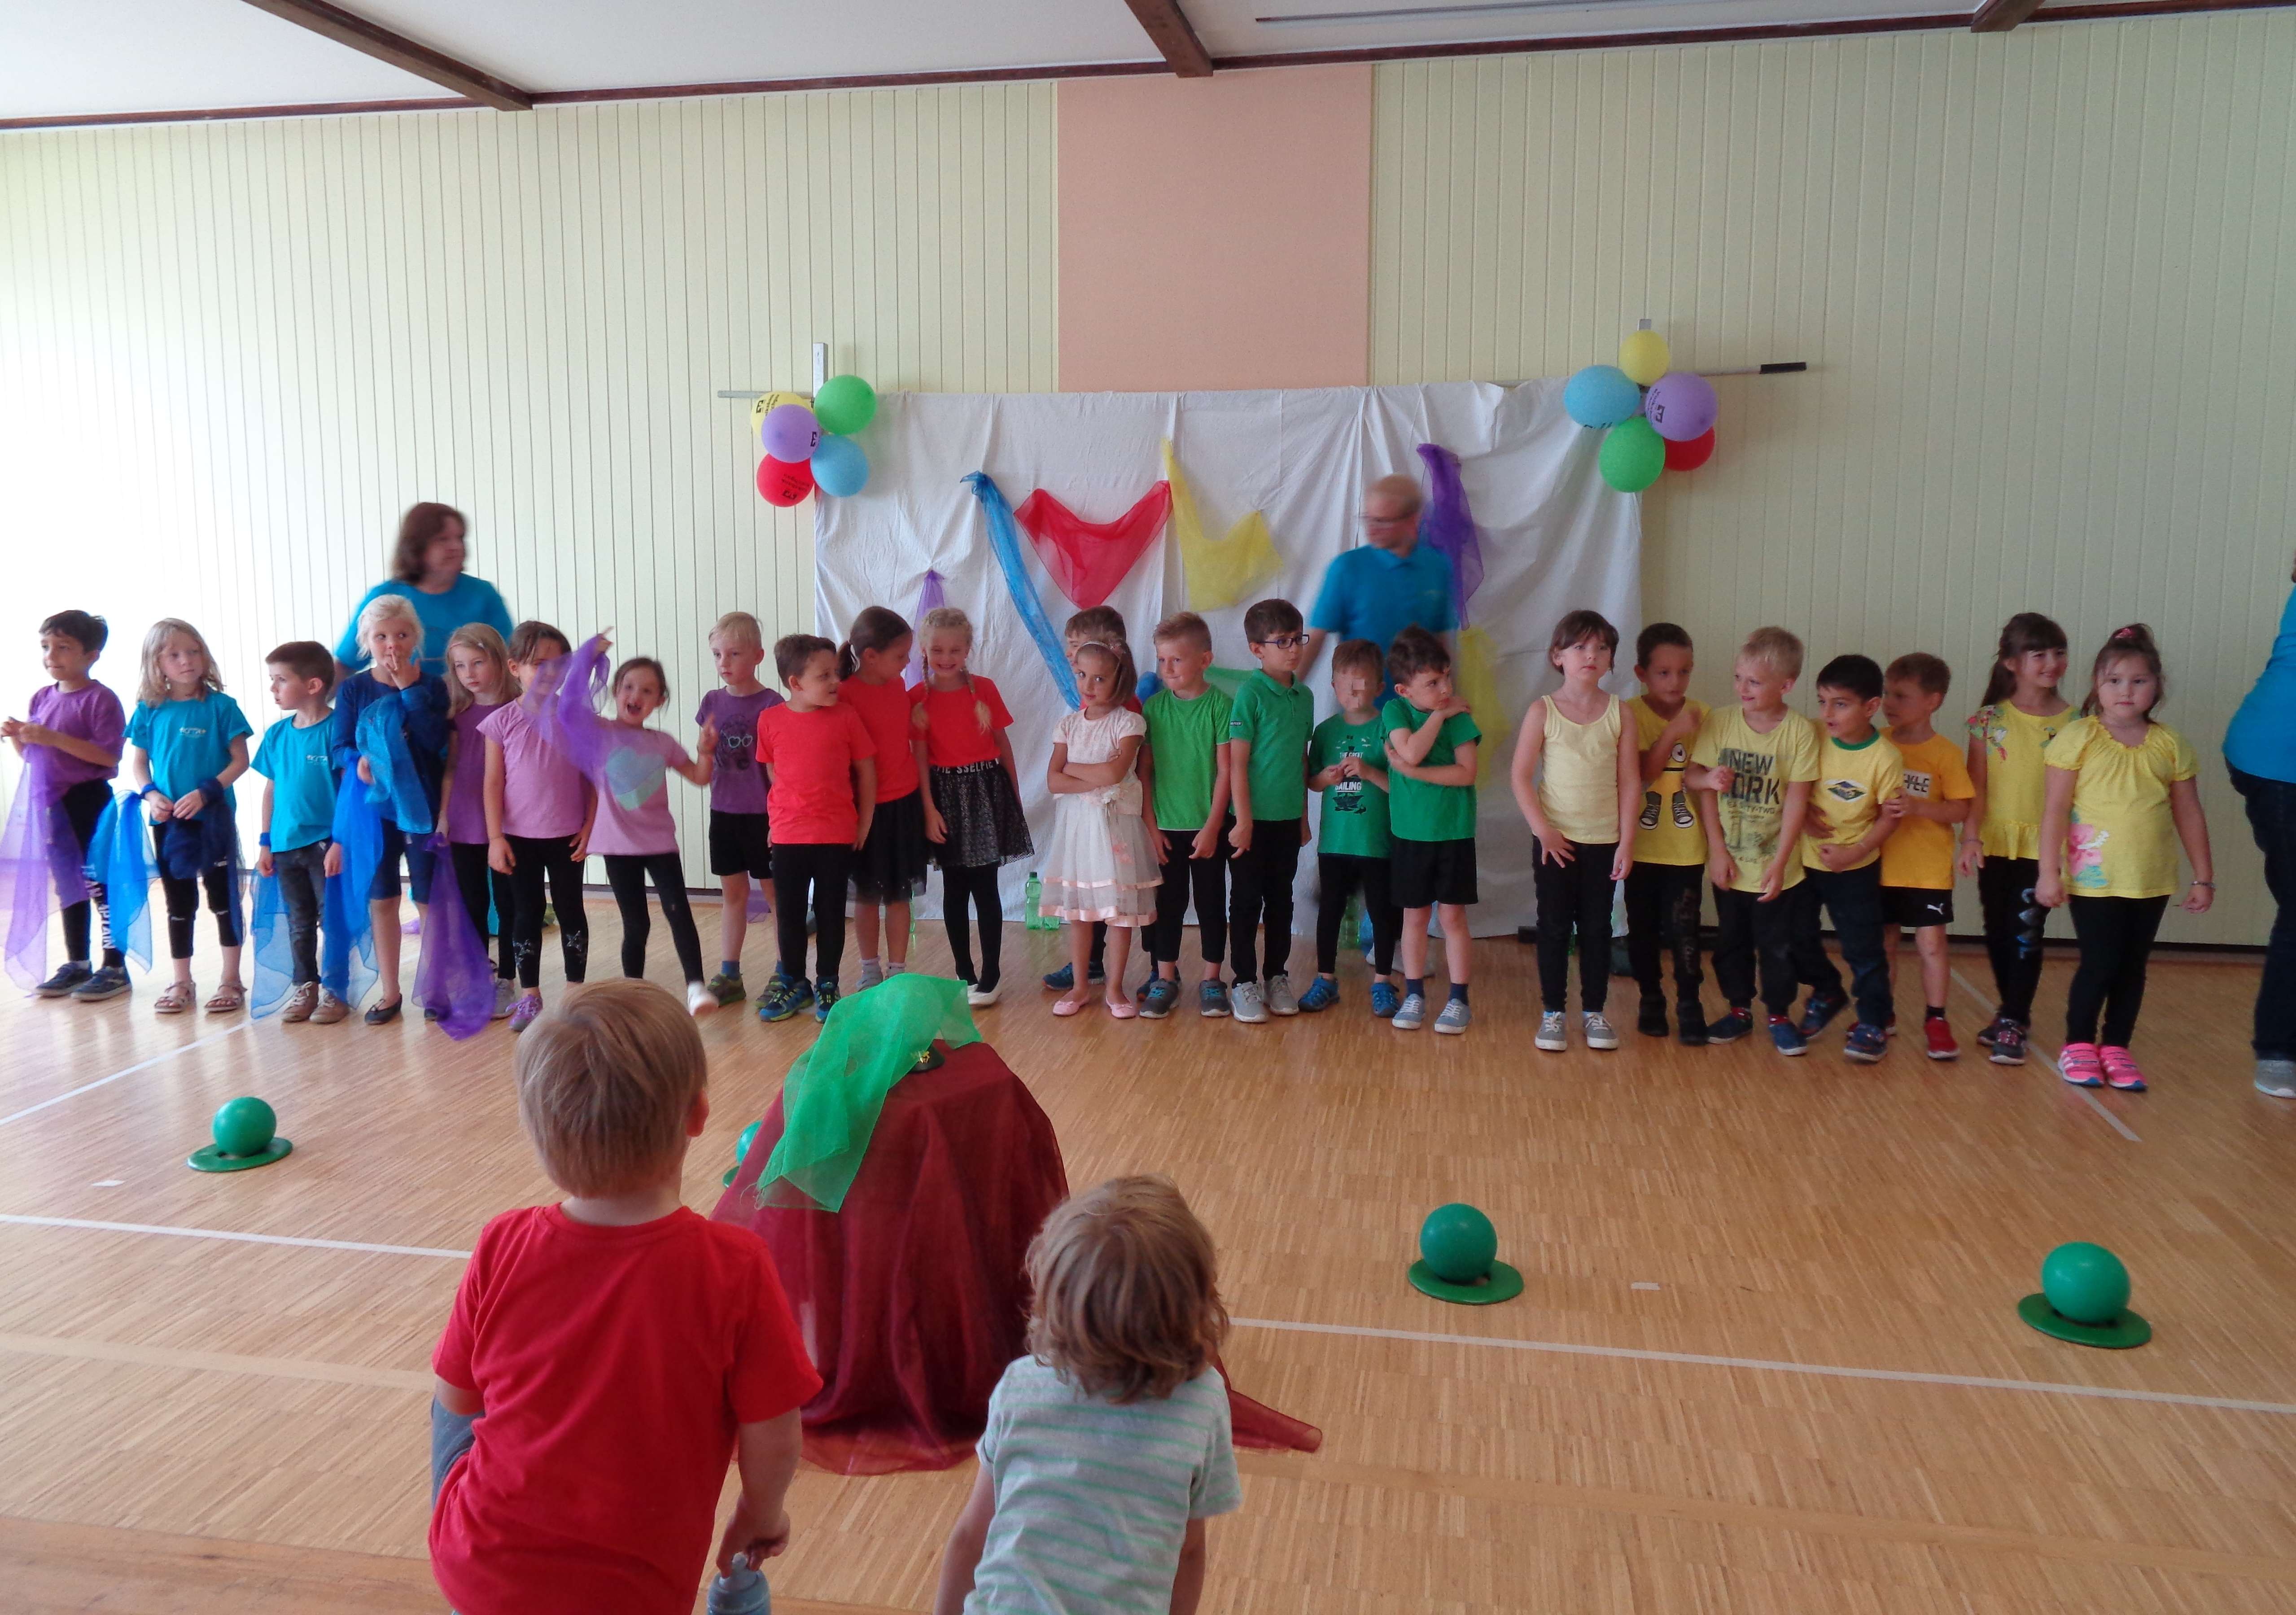  Am 12. Juli wurde im Bonhoeffer-Saal des Pestalozzi-Kindergarten groß gefeiert 